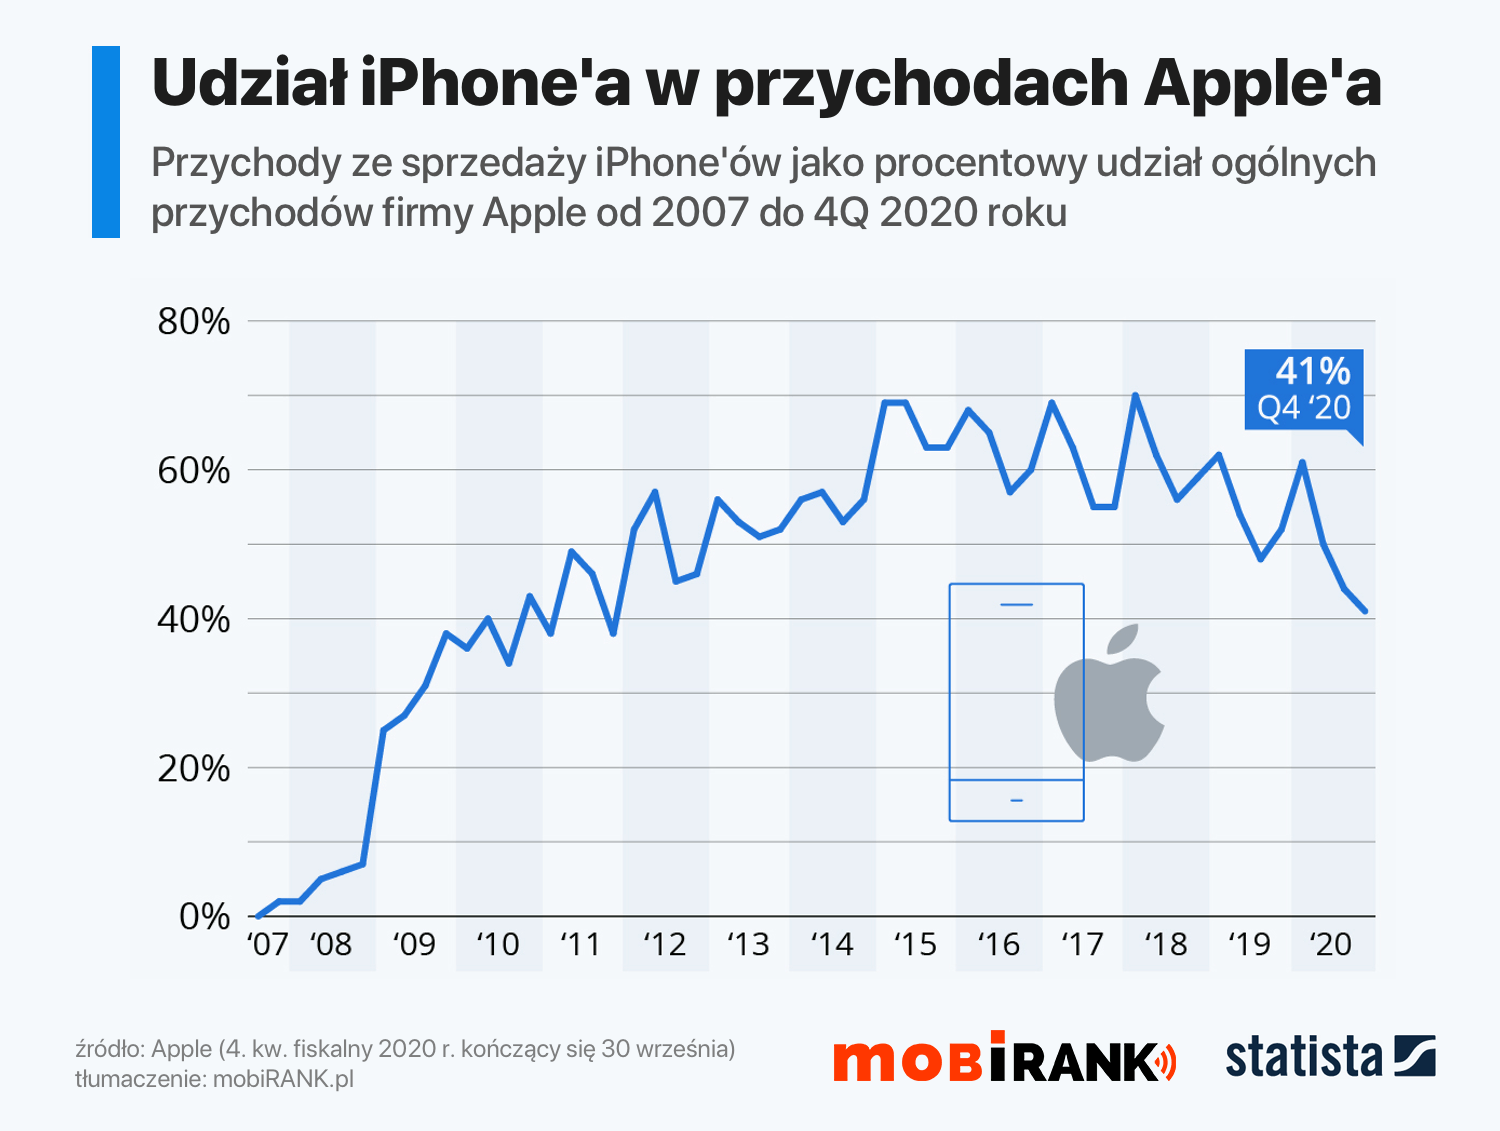 Udział iPhone'a w ogólnych przychodach firmy Apple od 2007 do 4Q fiskalnego 2020 r.